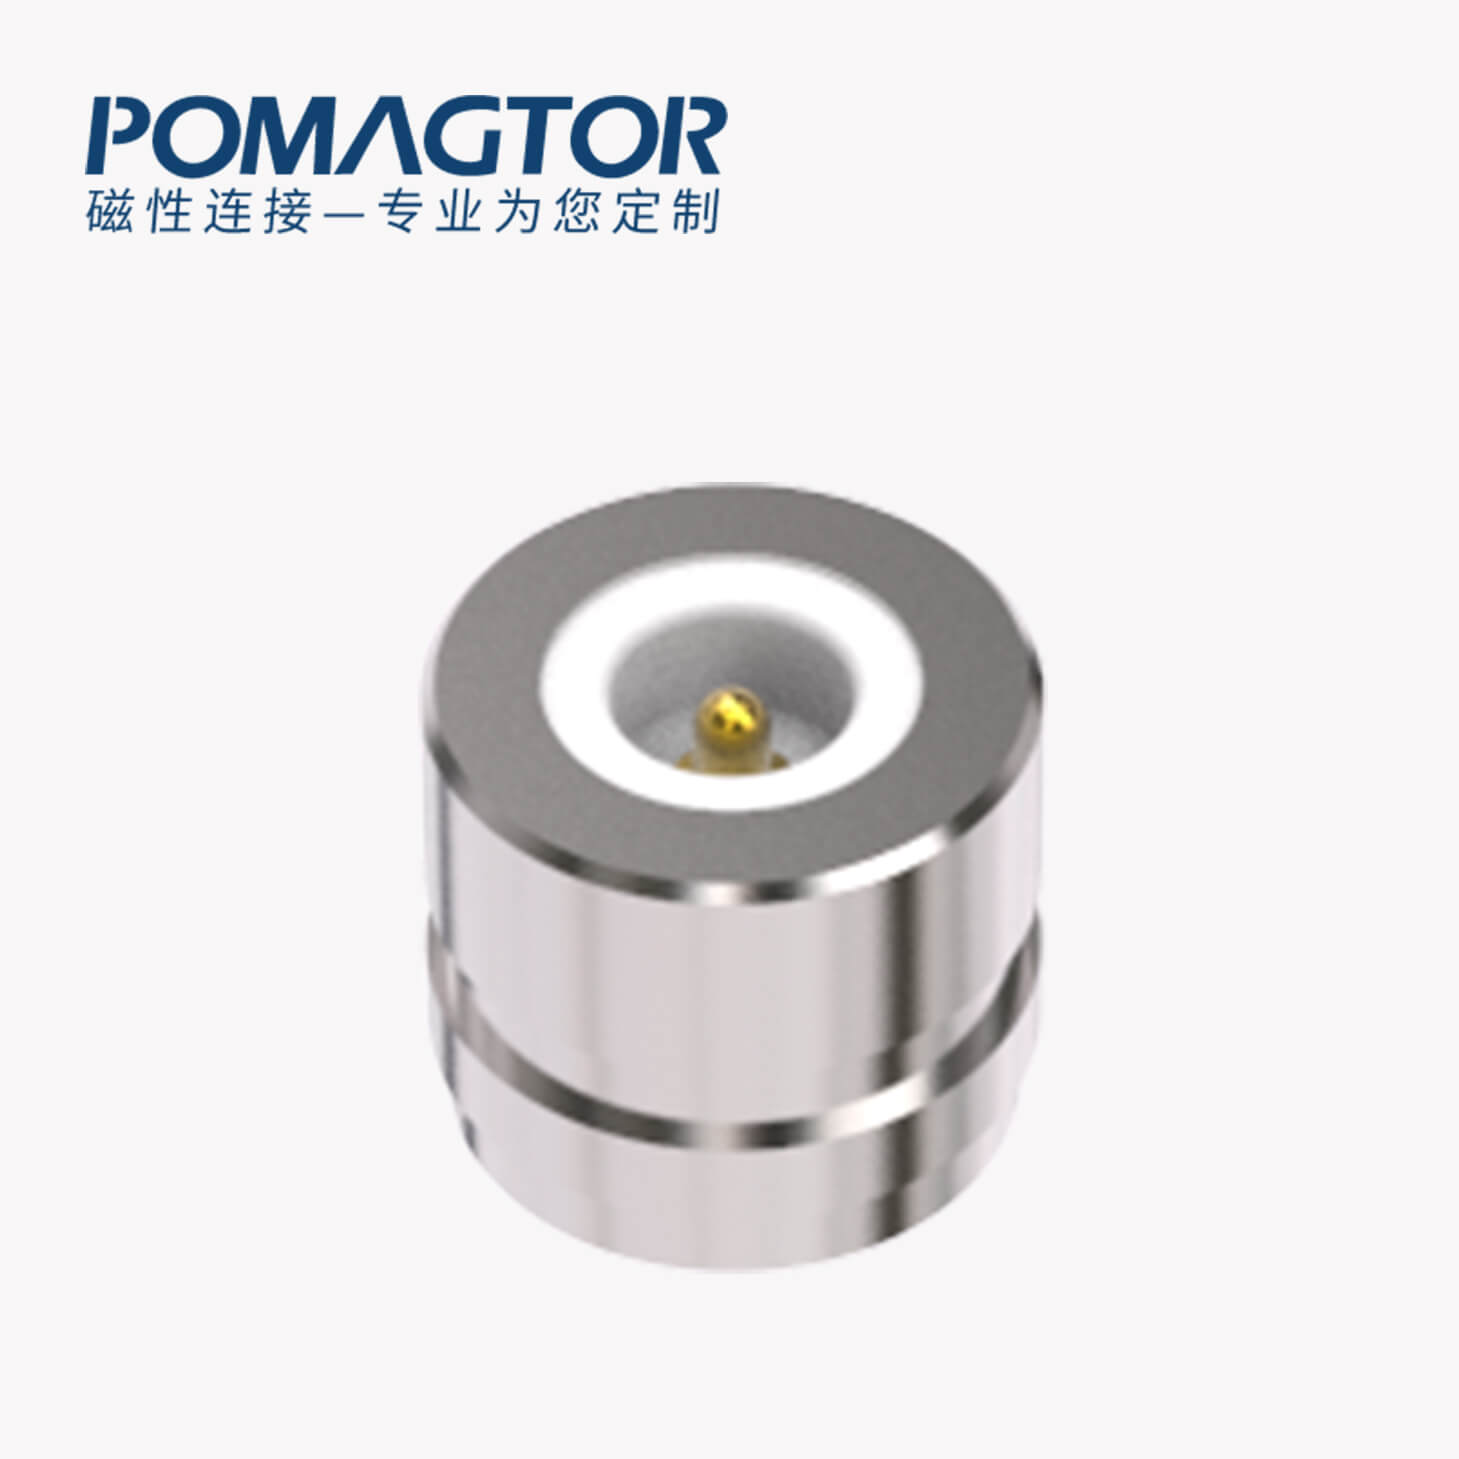 磁吸连接器 圆形磁性系列：2PIN，电镀黄铜Au3u，电压5V，电流1.5A，按压行程0.8mm:60gfMax，弹力10000次+，工作温度-30°~85°